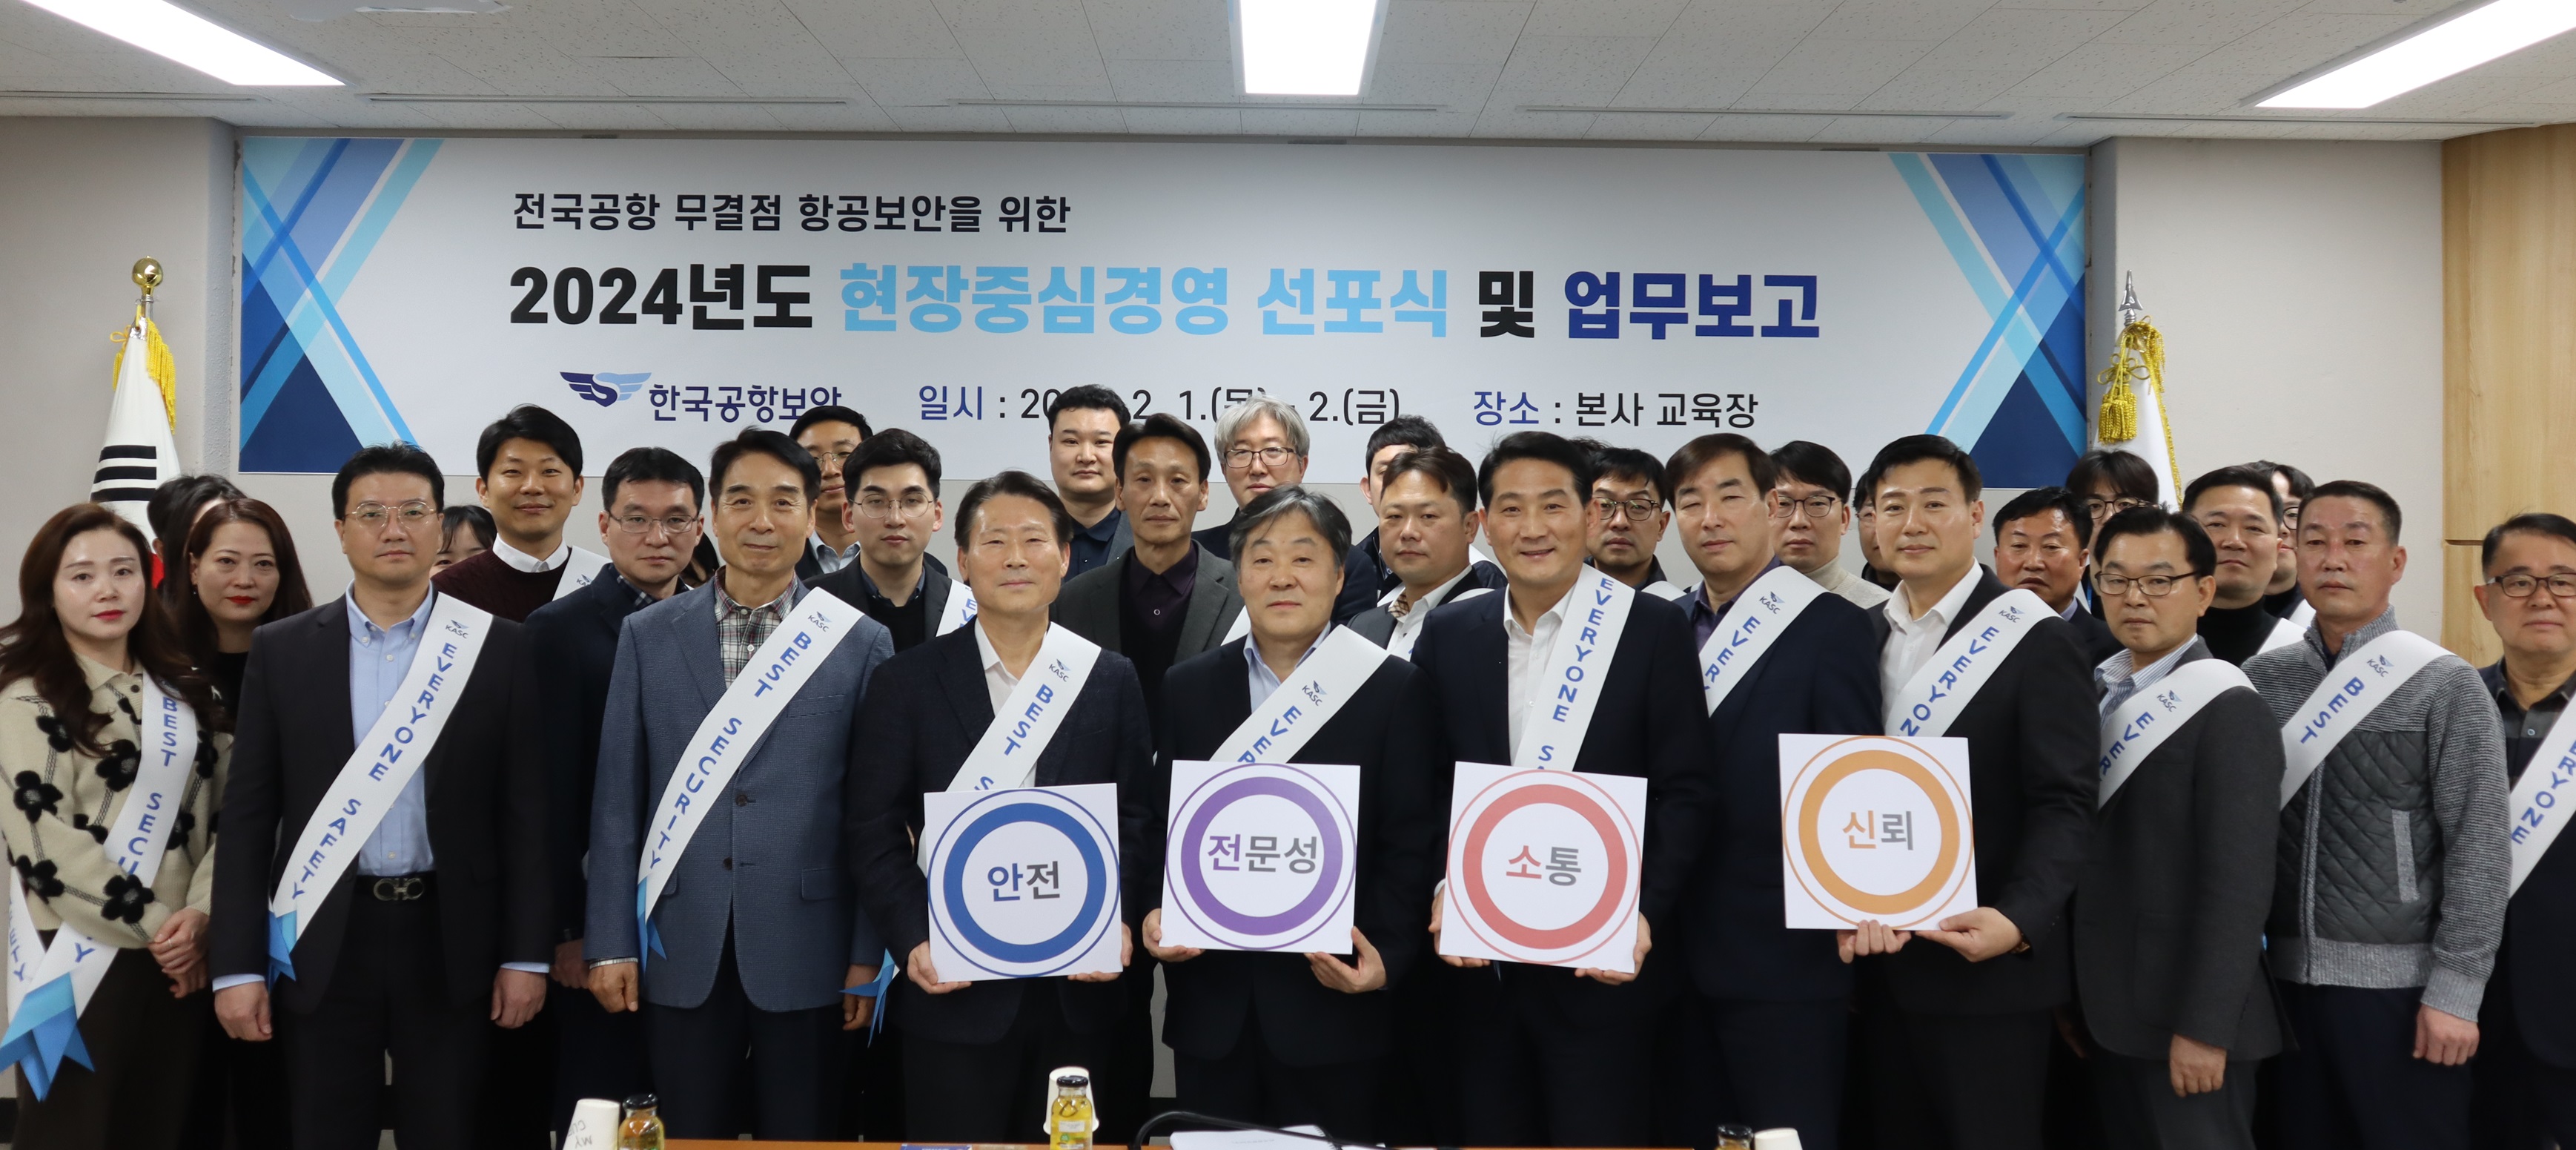 한국공항보안(주), 2024년 항공보안사건 Zero에 전사적 총력